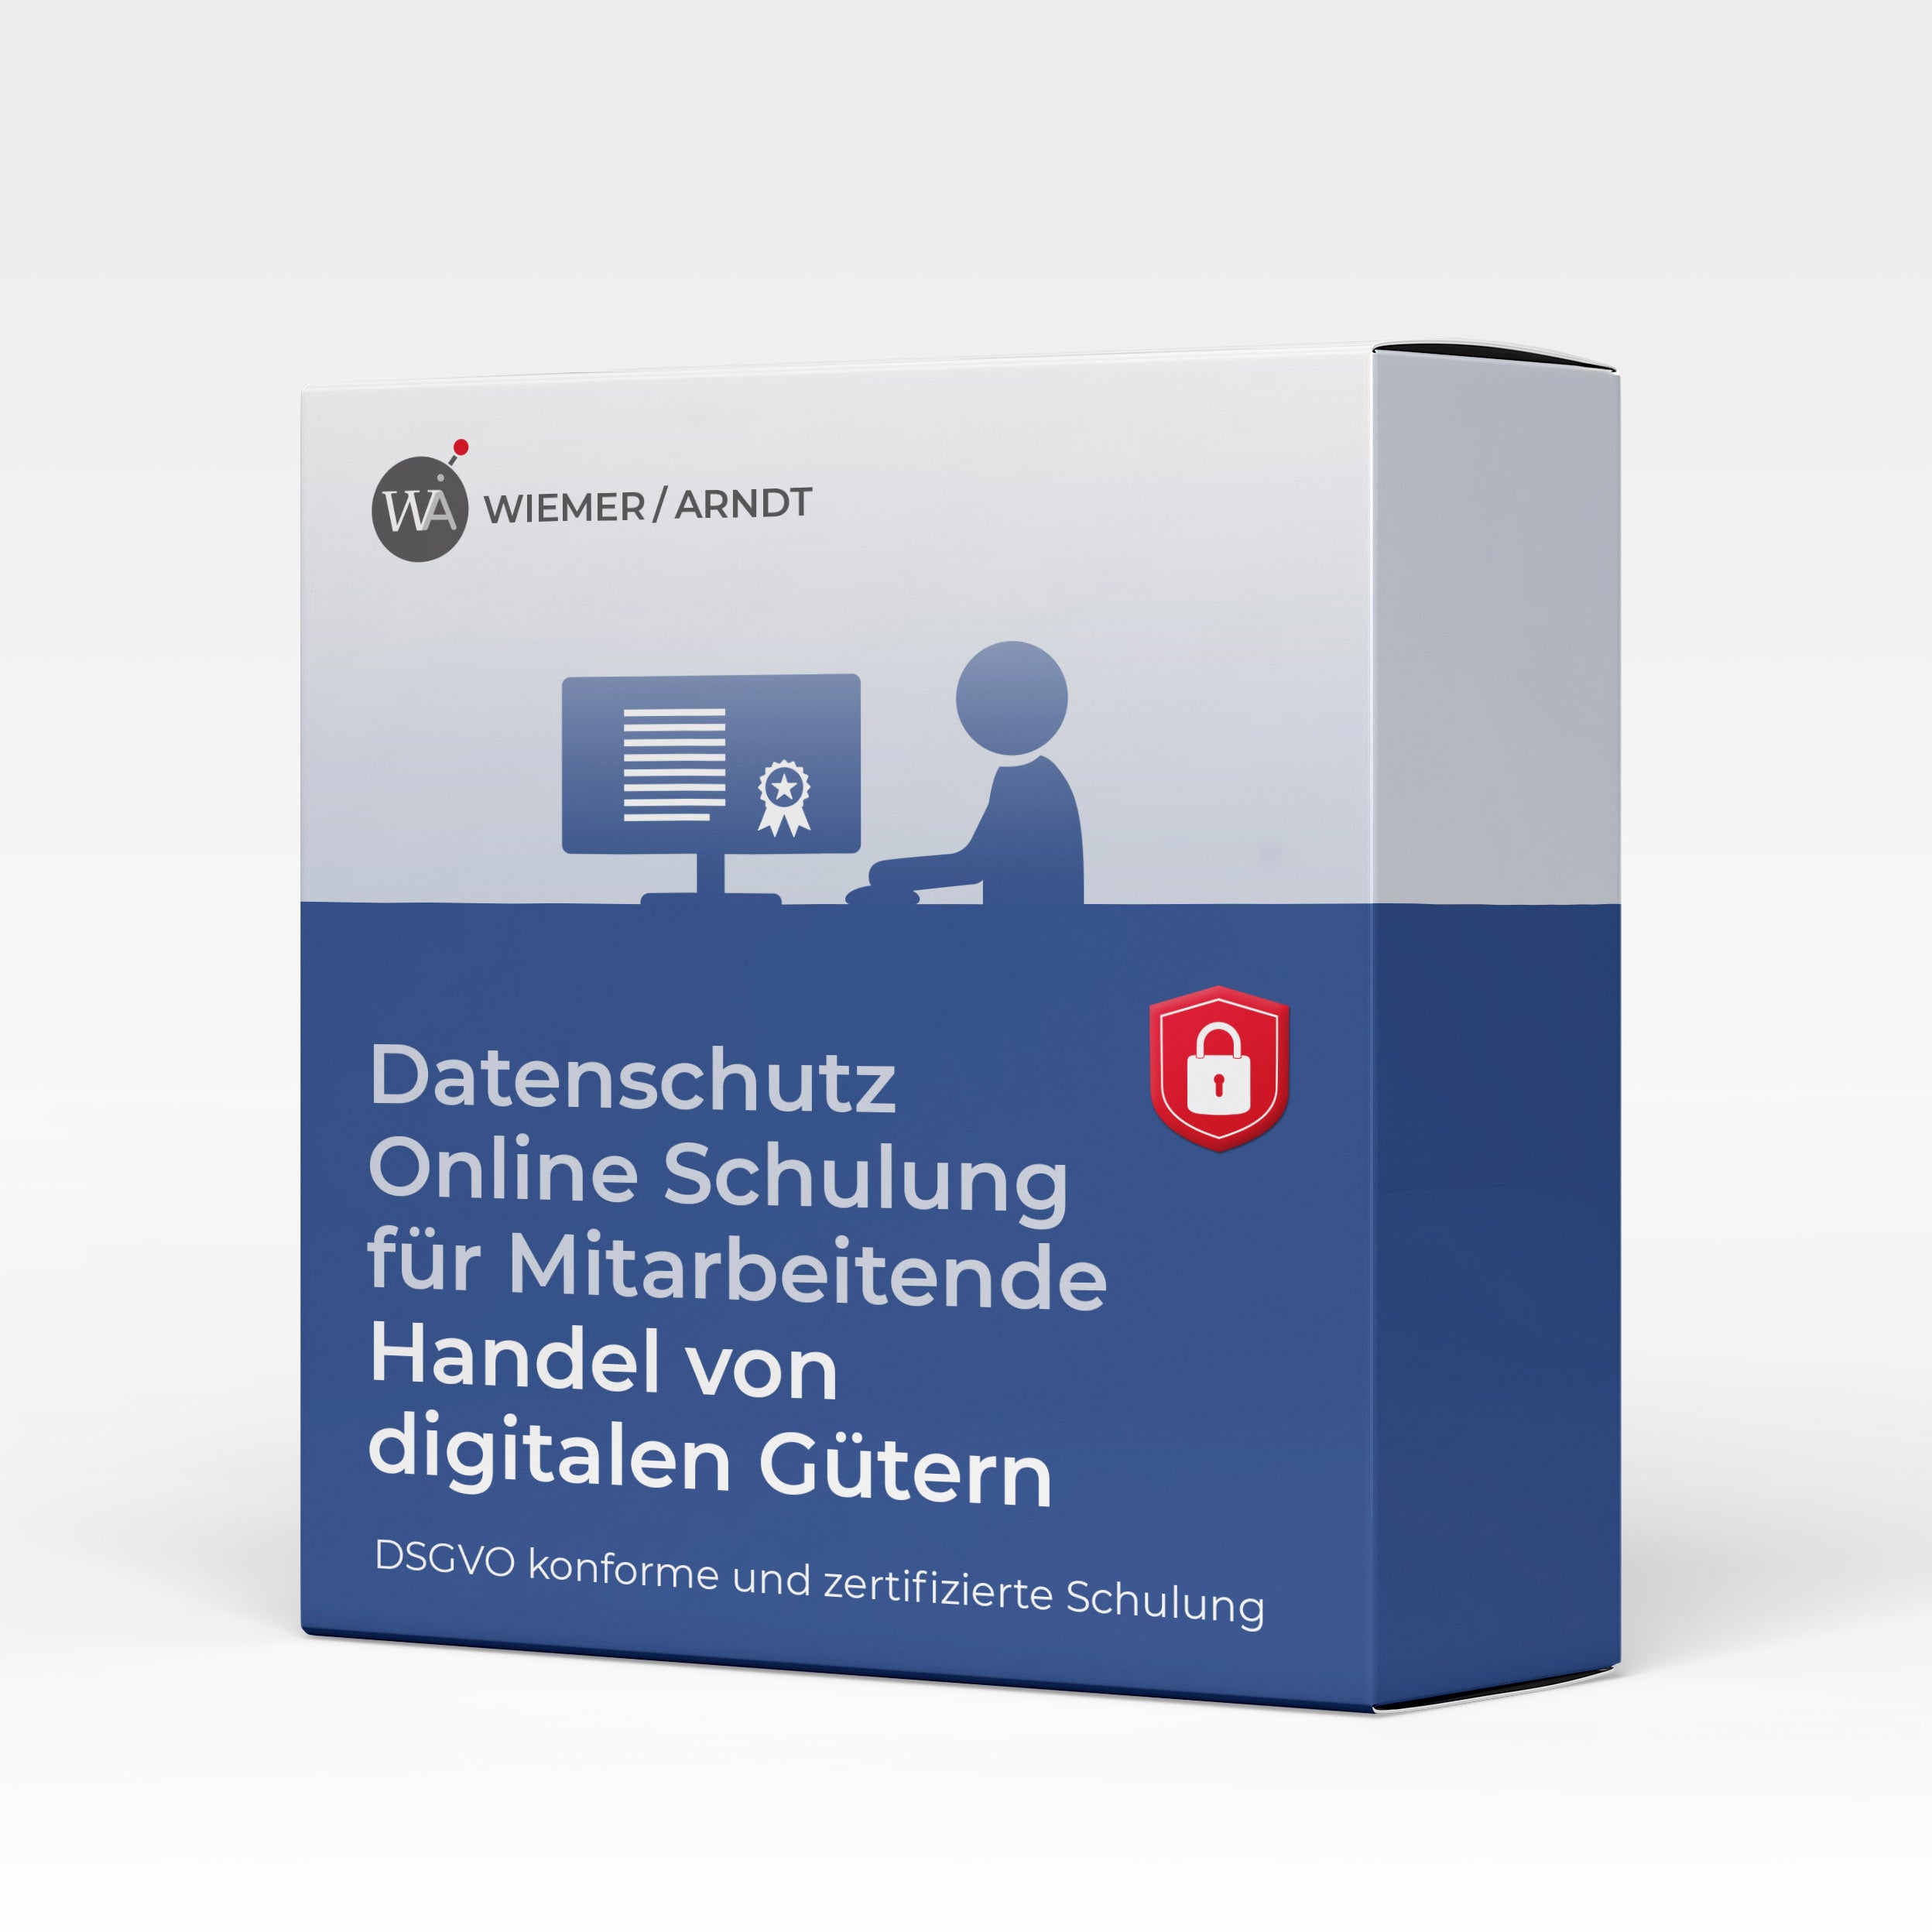 Datenschutz Online Schulung für Mitarbeiter: Digitale Gütern